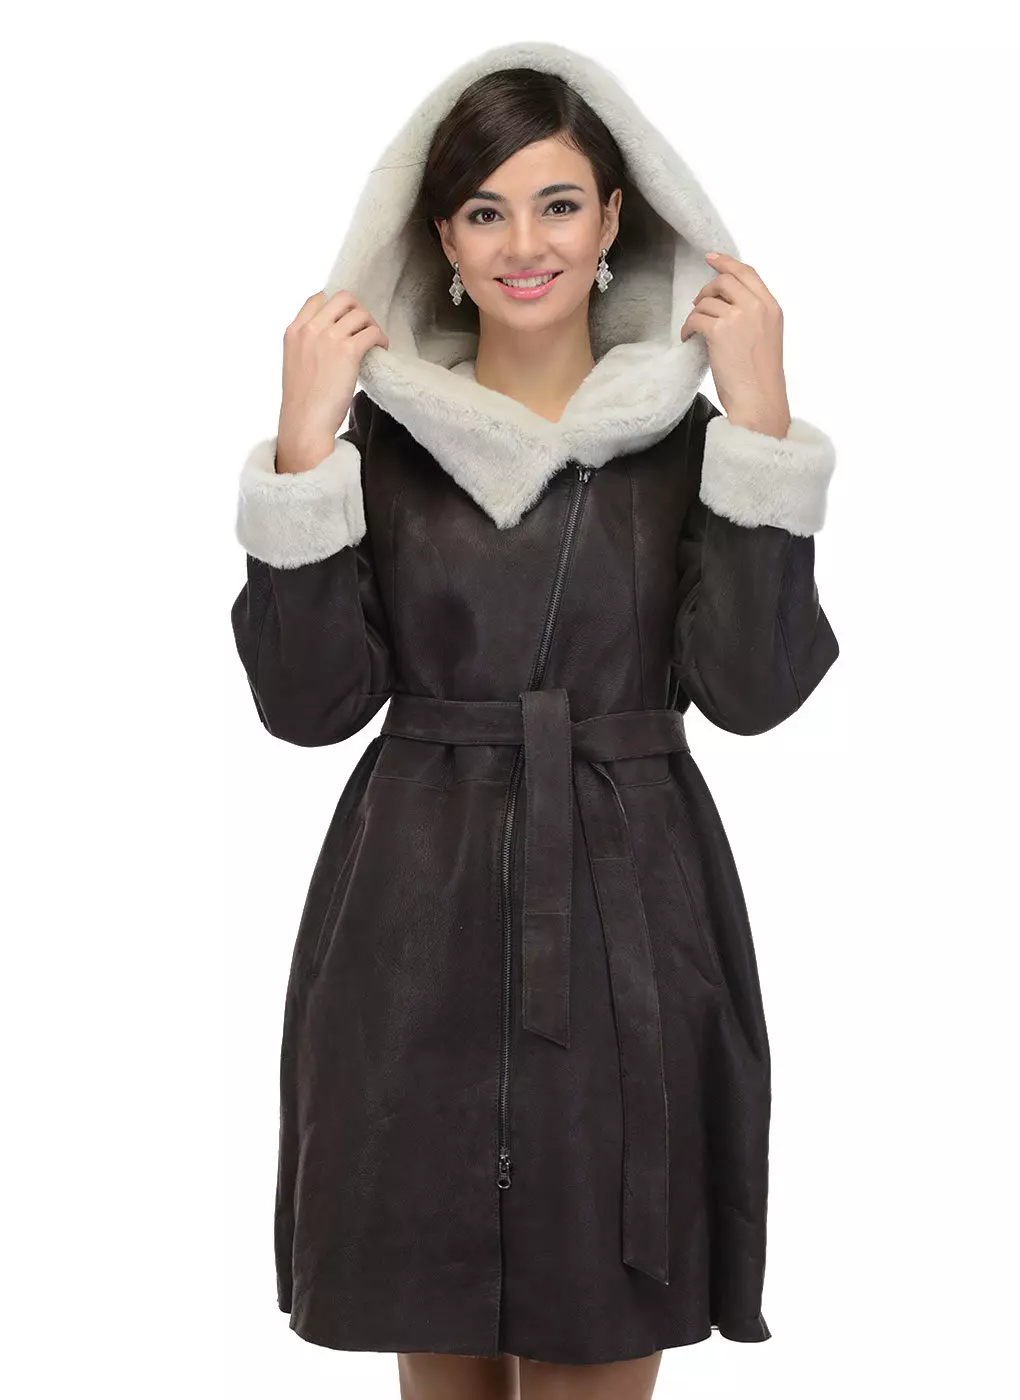 Calyaev's Coat (50 fotos): models de dona de Fur Factory Kalyaev, crítiques 382_25